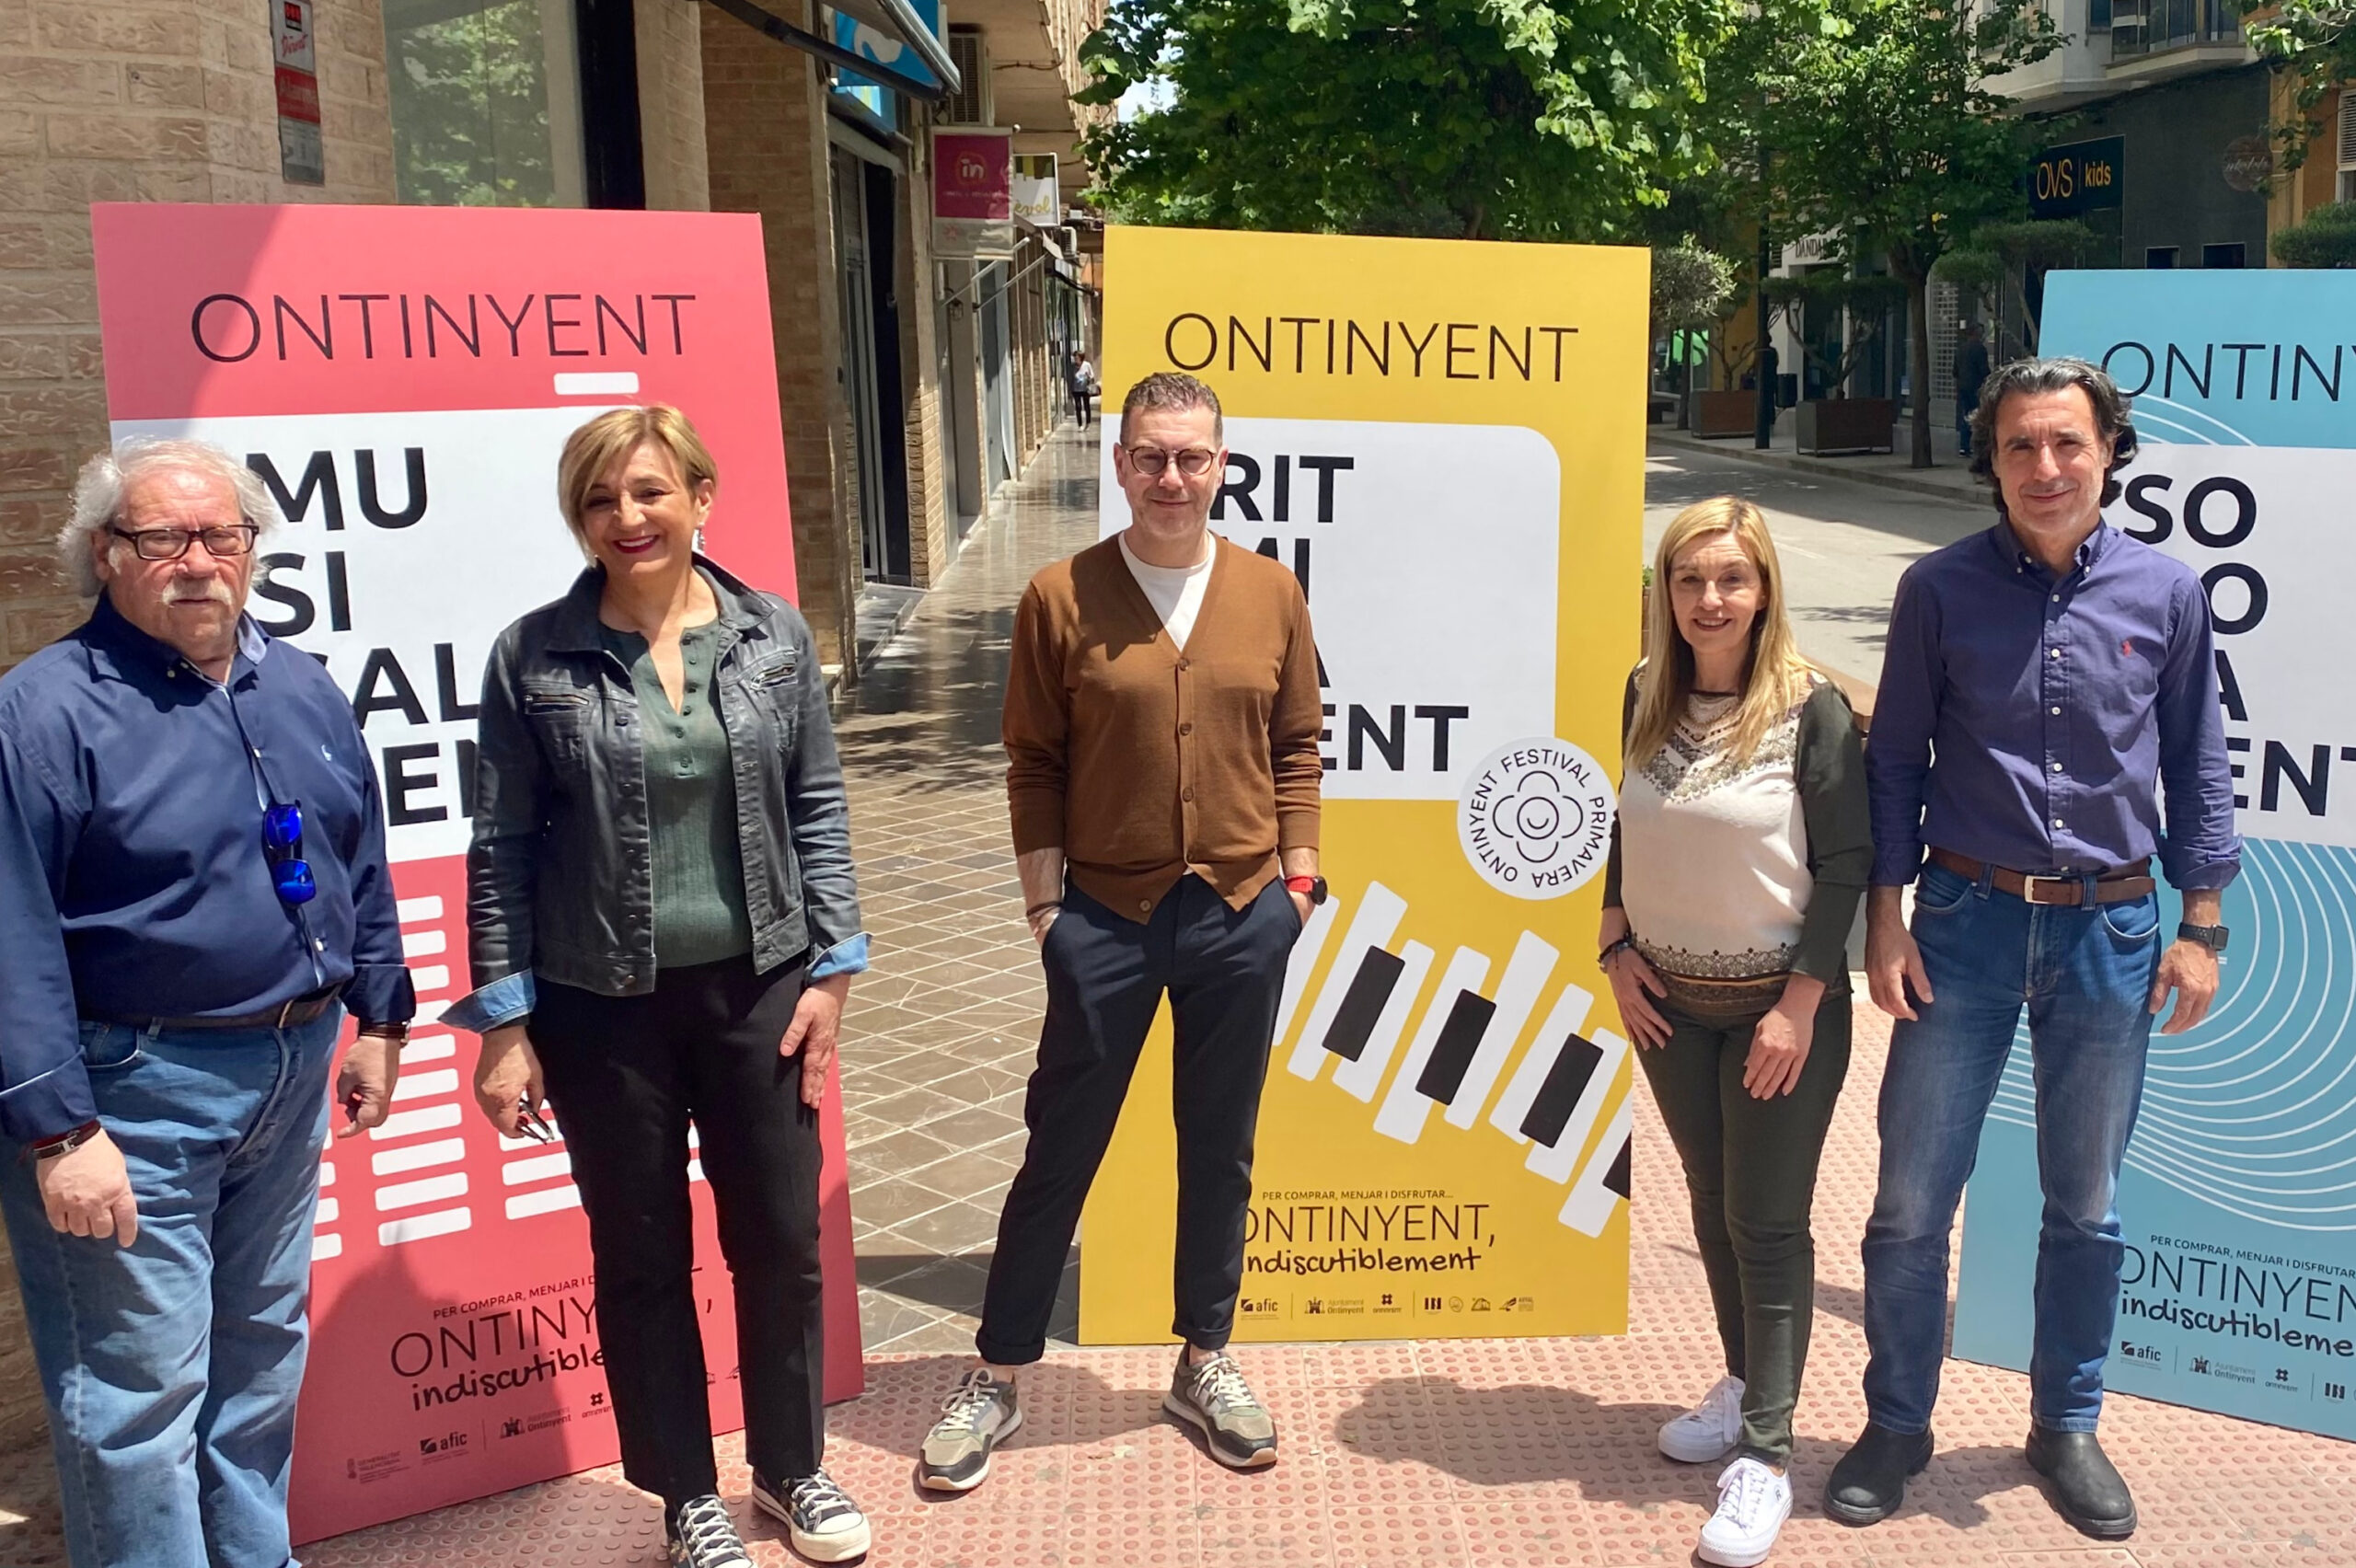 Llega el 'Festival de Primavera' con actuaciones musicales en la calle El Periódico de Ontinyent - Noticias en Ontinyent